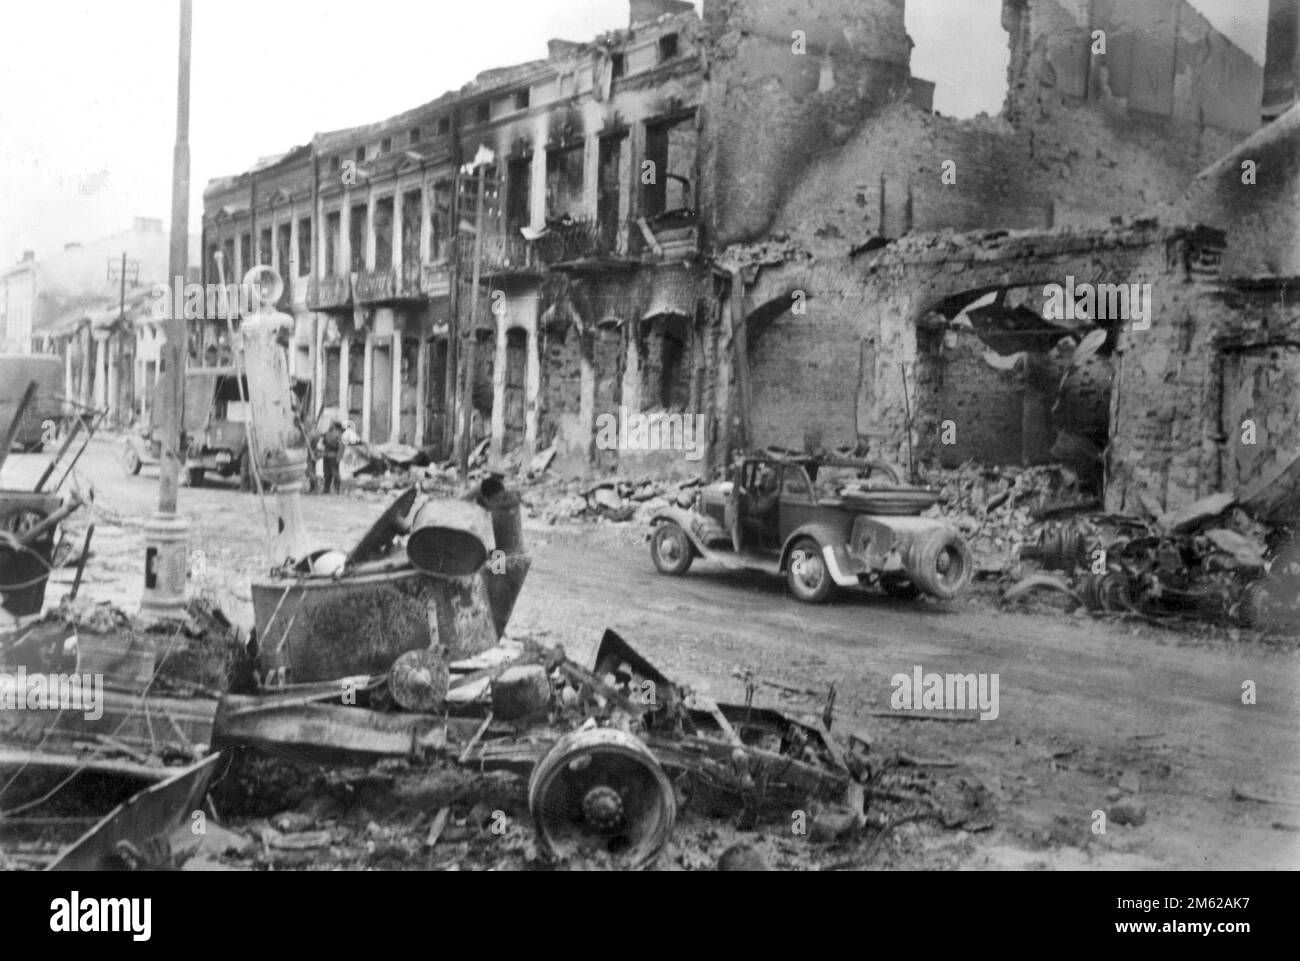 Un anonimo resti di una città sovietica obliterata, distrutta durante l'operazione Barbarossa, l'invasione nazista dell'Unione Sovietica. Foto Stock